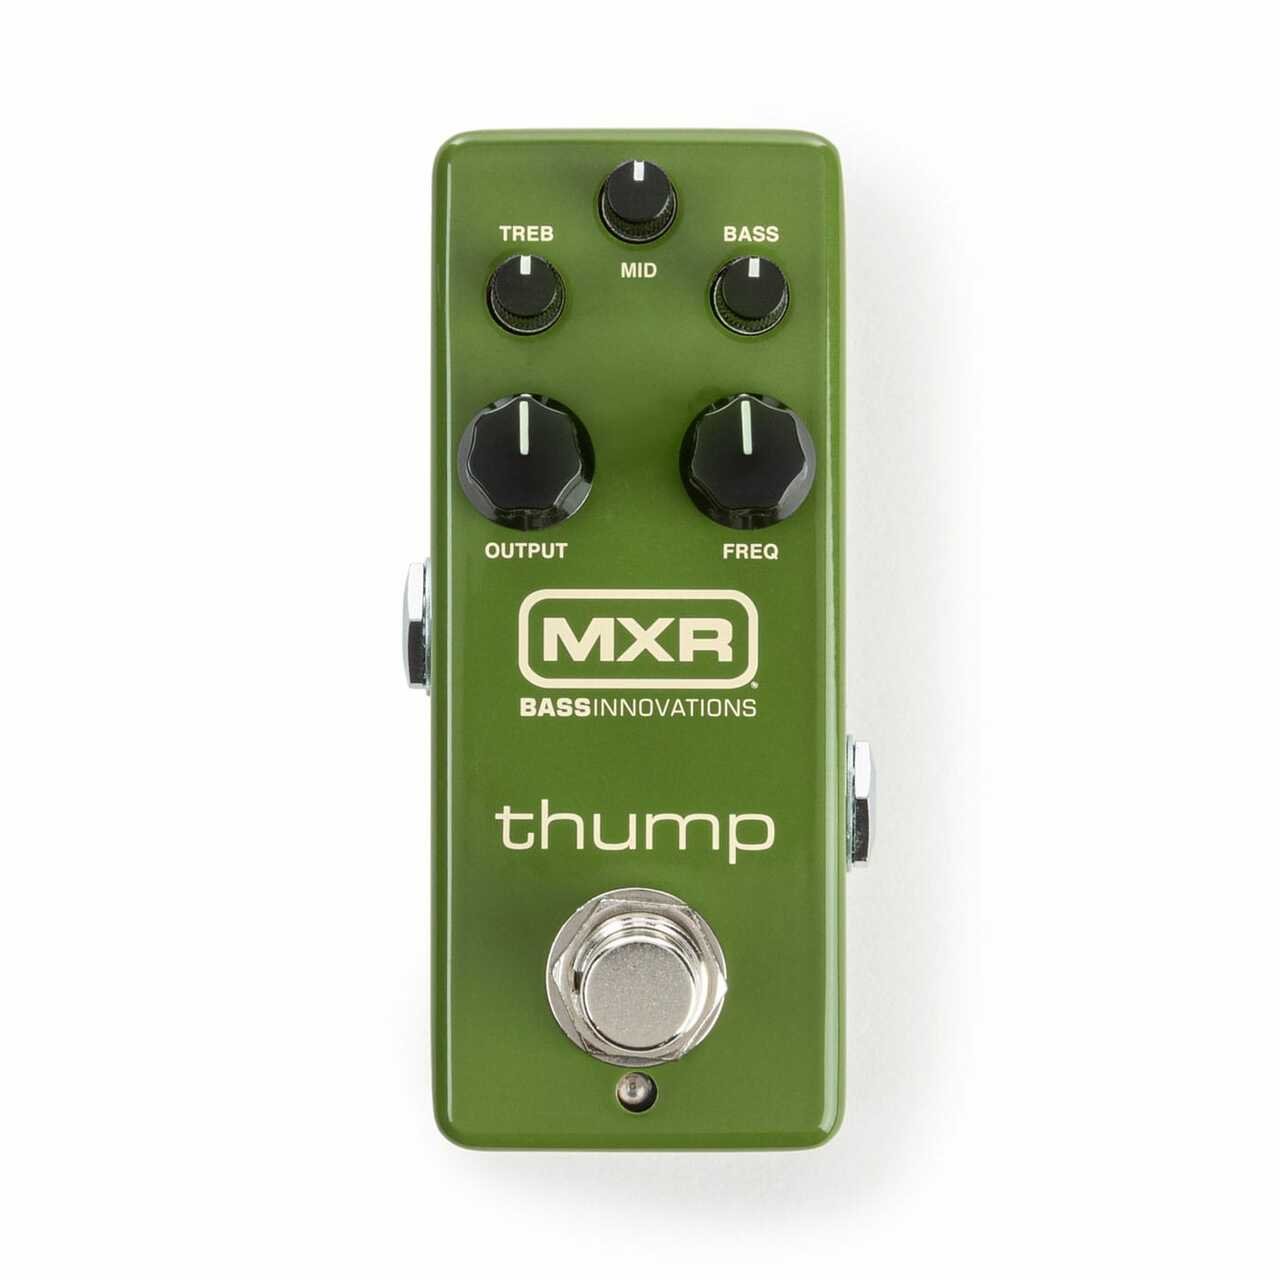 ベースサウンドをより良くするために最適 【並行輸入品】MXR THUMP BASS PREAMP M281